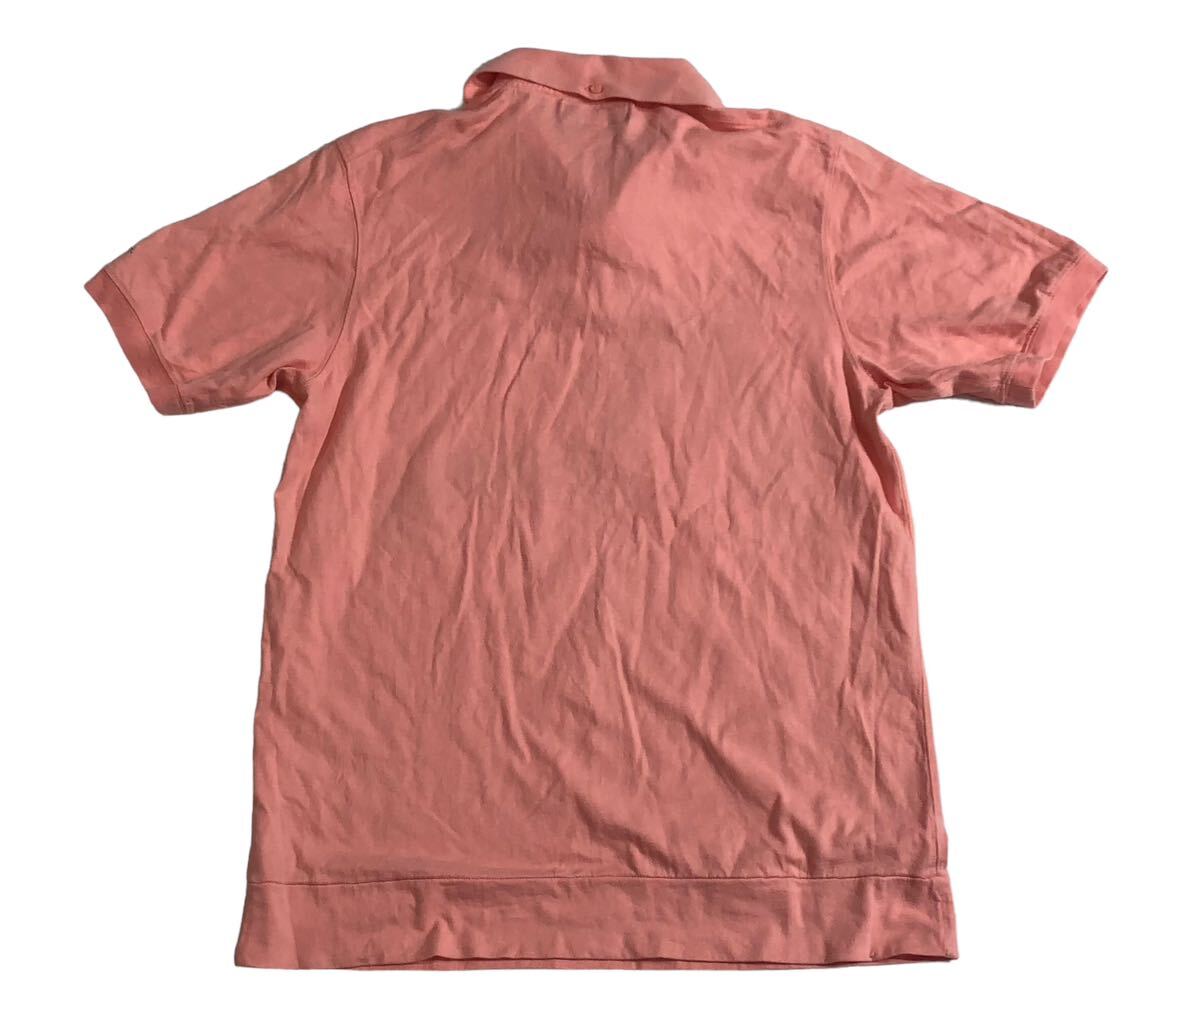 # EVISU YAMANE GUARANTEED Evisu yamane гарантия -do# большой утка me Logo принт вышивка рубашка-поло с коротким рукавом розовый 40